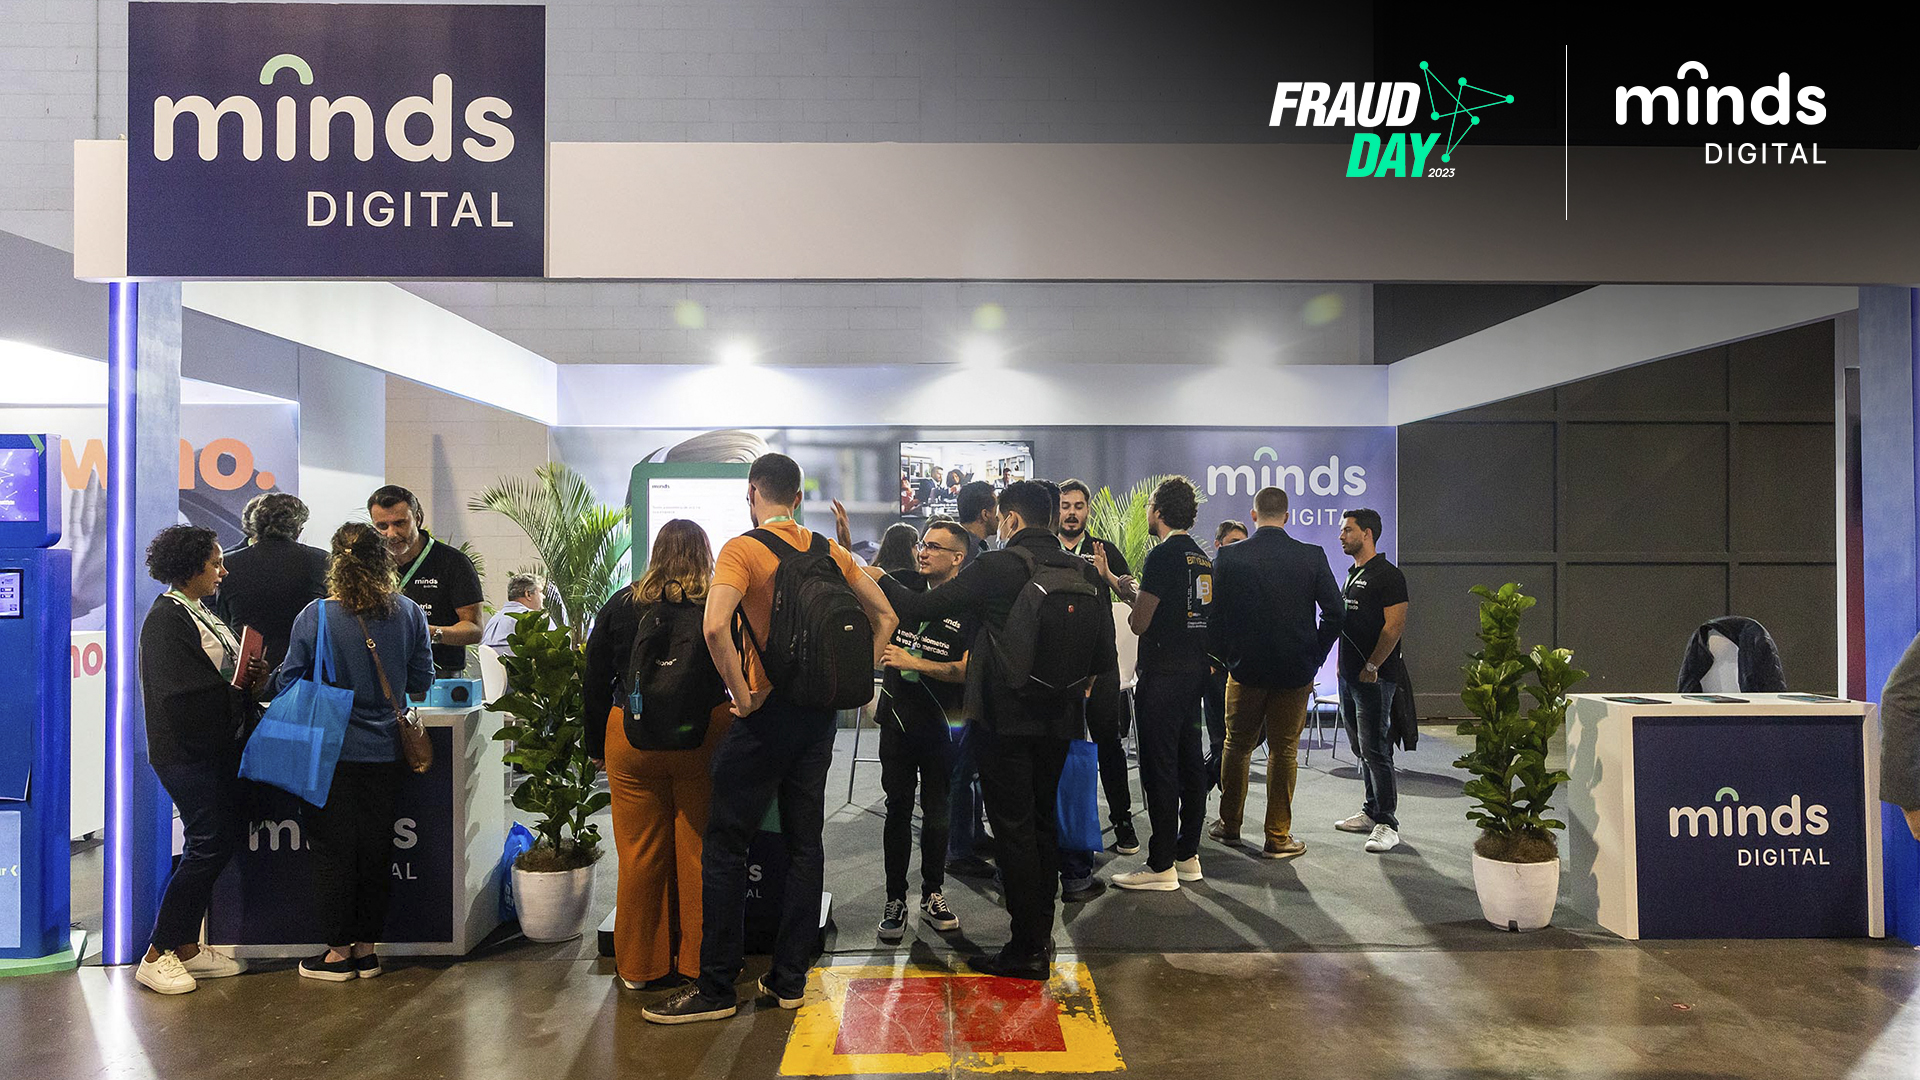 Fraud Day e a participação da Minds Digital